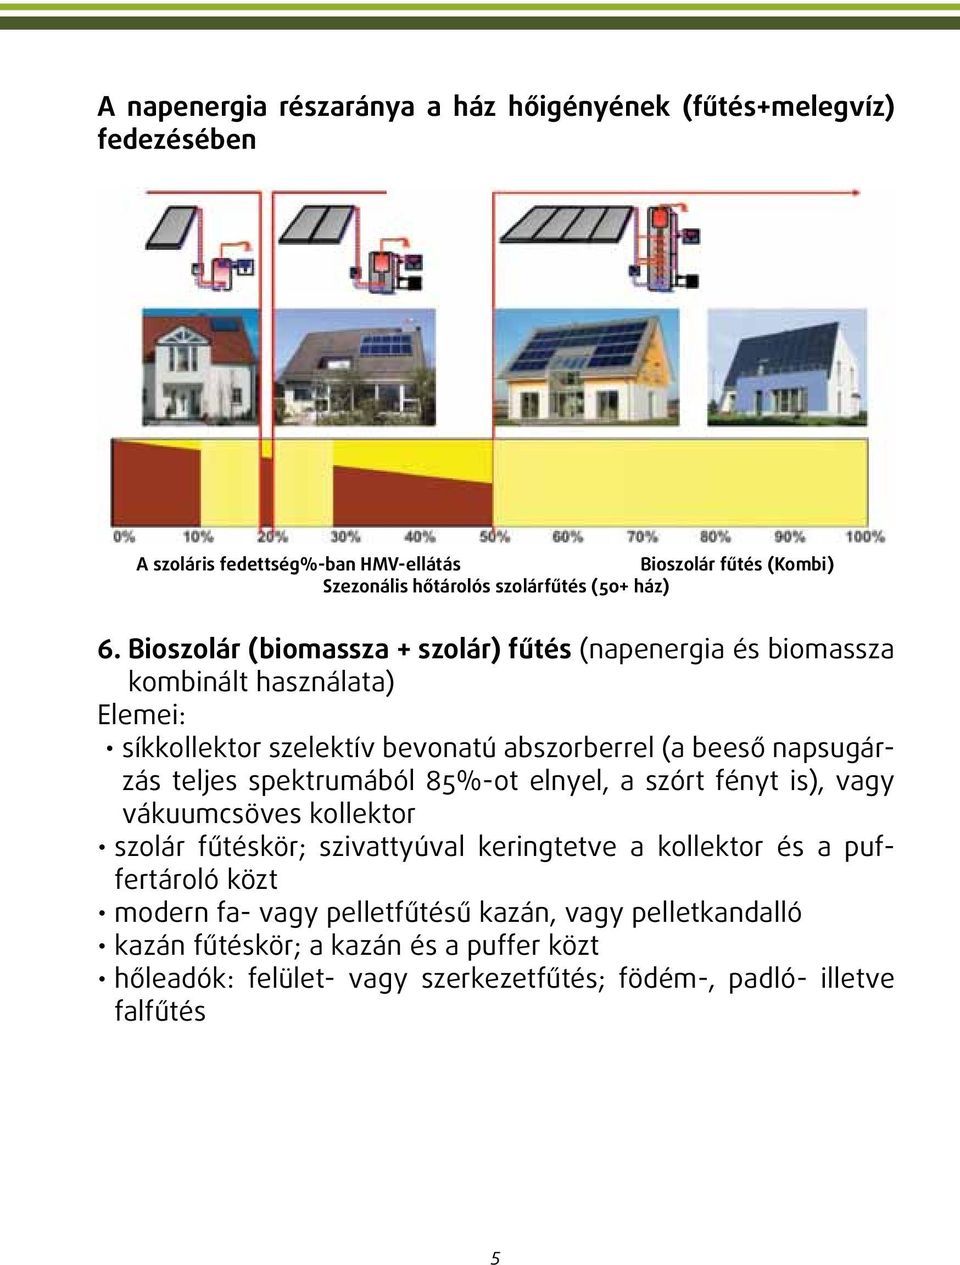 Bioszolár (biomassza + szolár) fűtés (napenergia és biomassza kombinált használata) Elemei: síkkollektor szelektív bevonatú abszorberrel (a beeső napsugárzás teljes